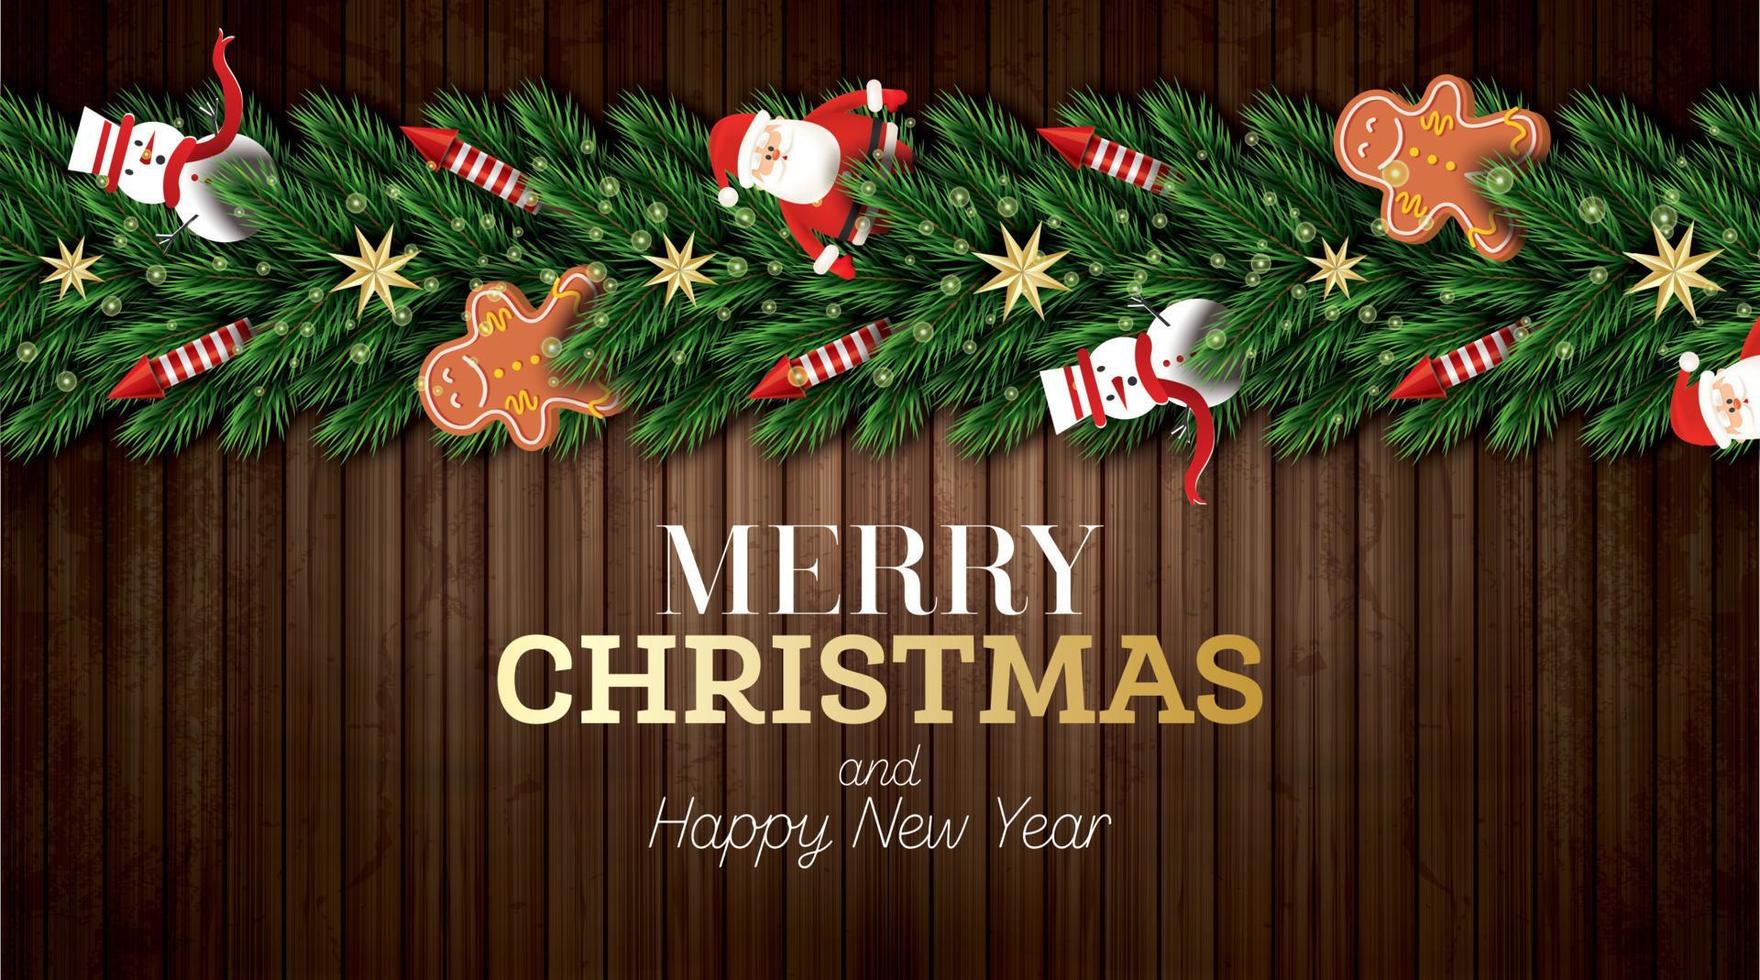 jul hälsning kort med santa claus, jul träd grenar, gyllene stjärnor, röd raketer, snögubbe och pepparkaka man. vektor